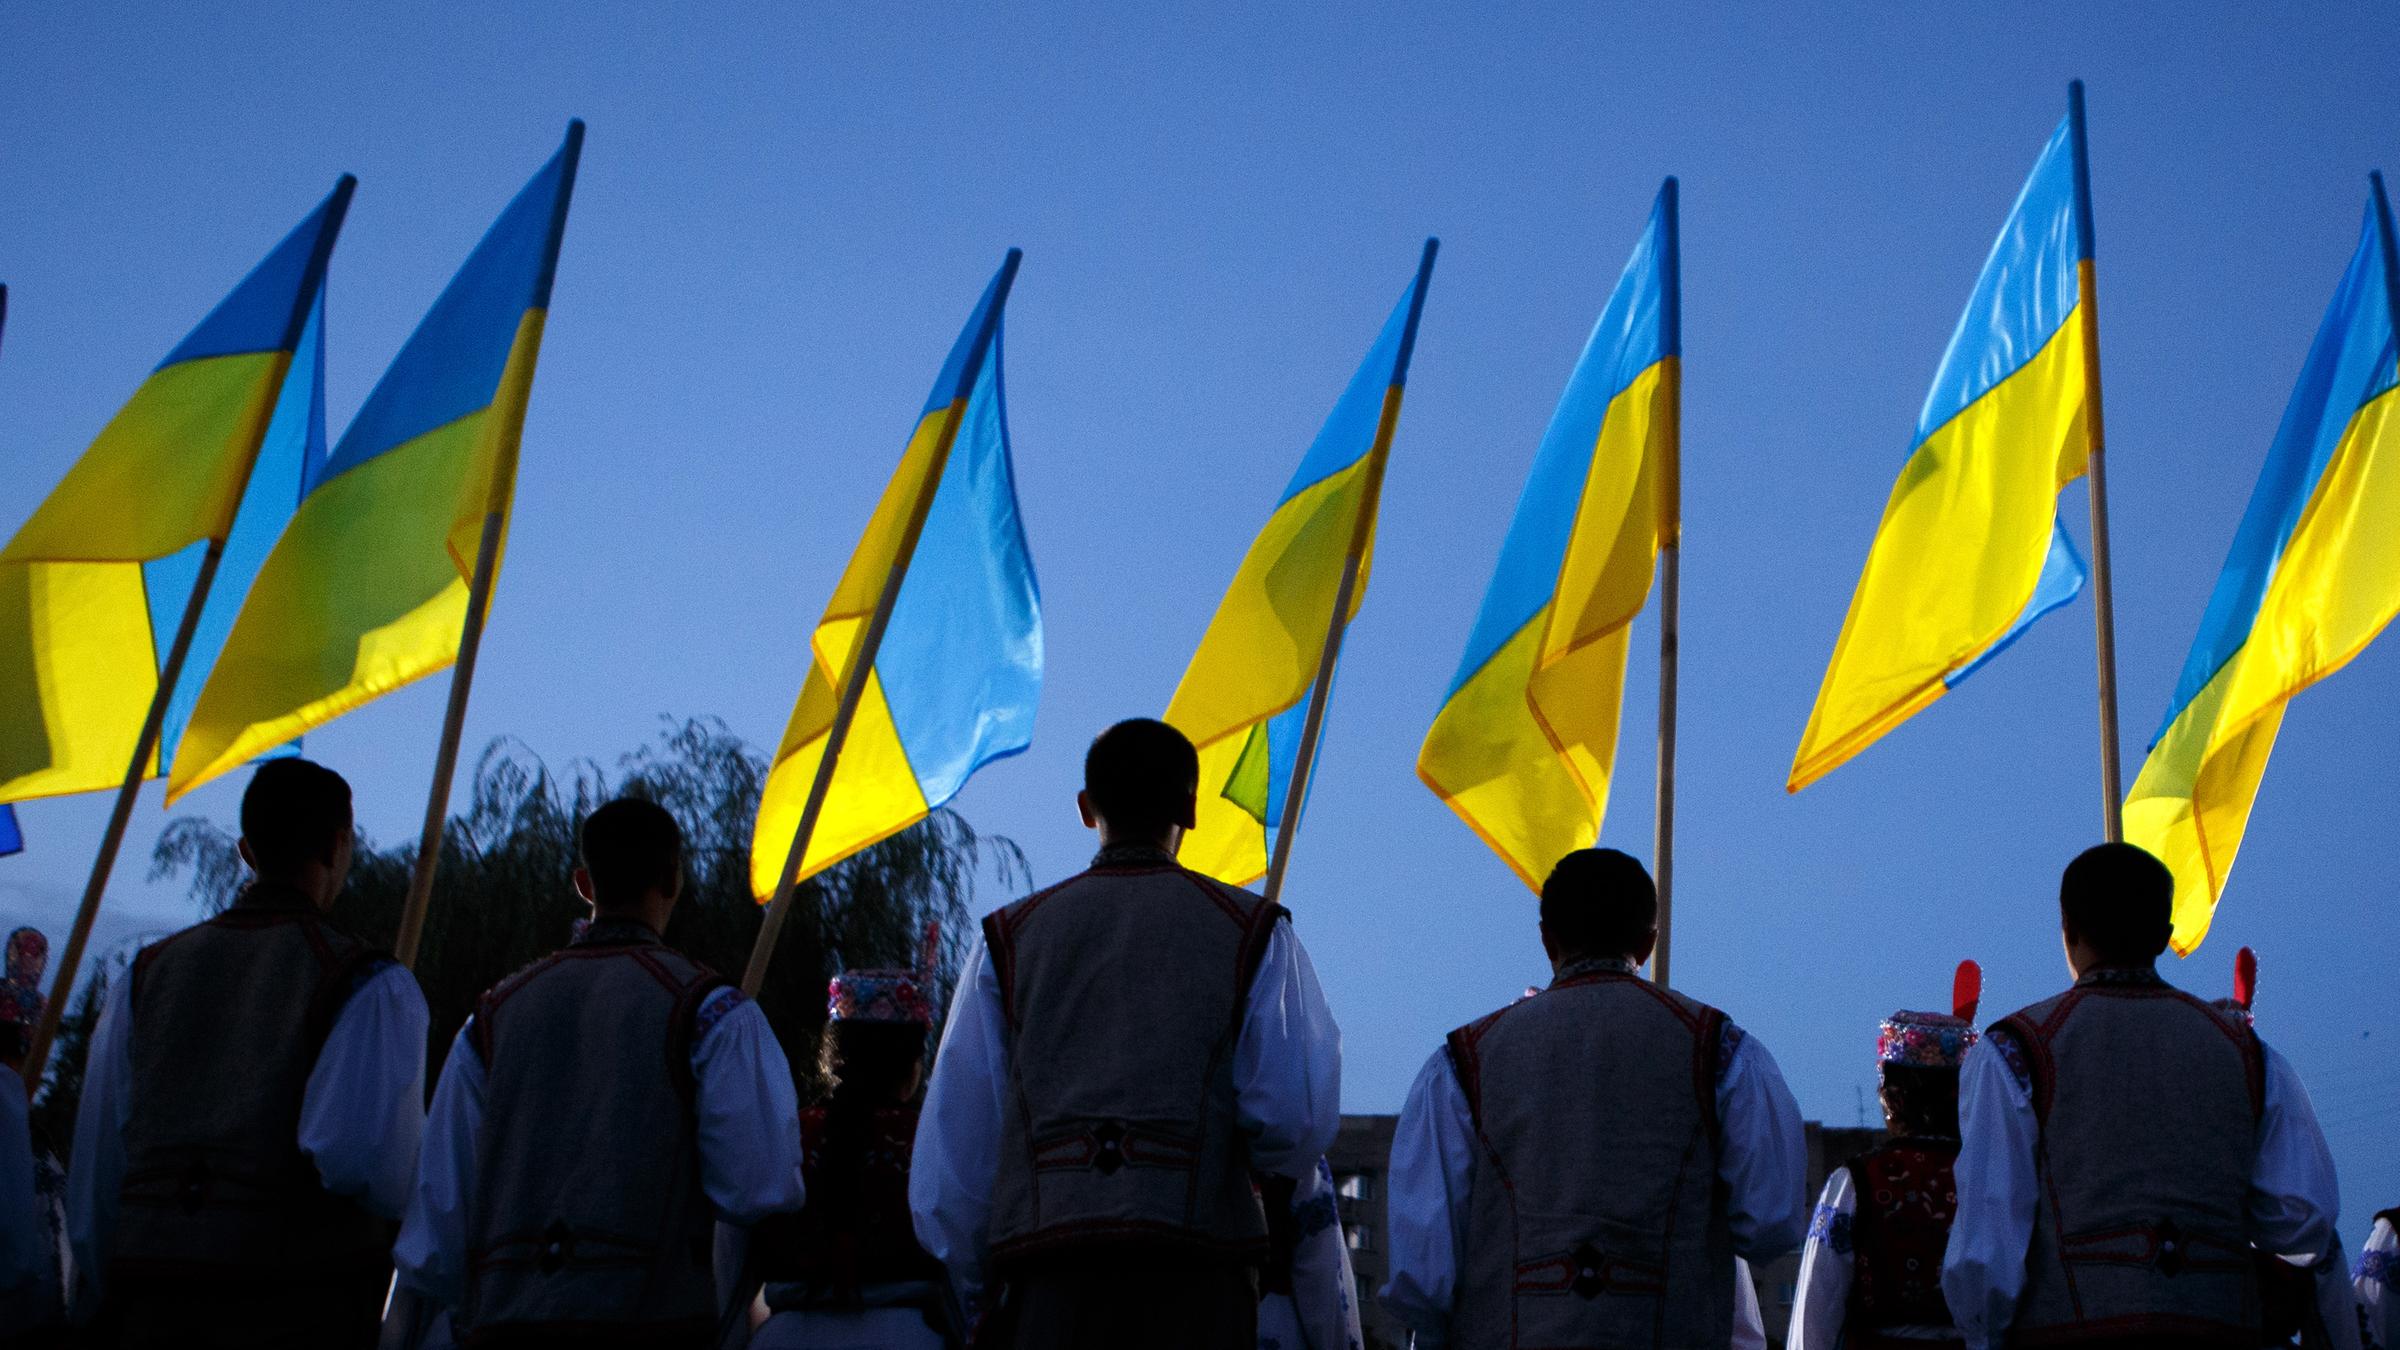 Украина день 22